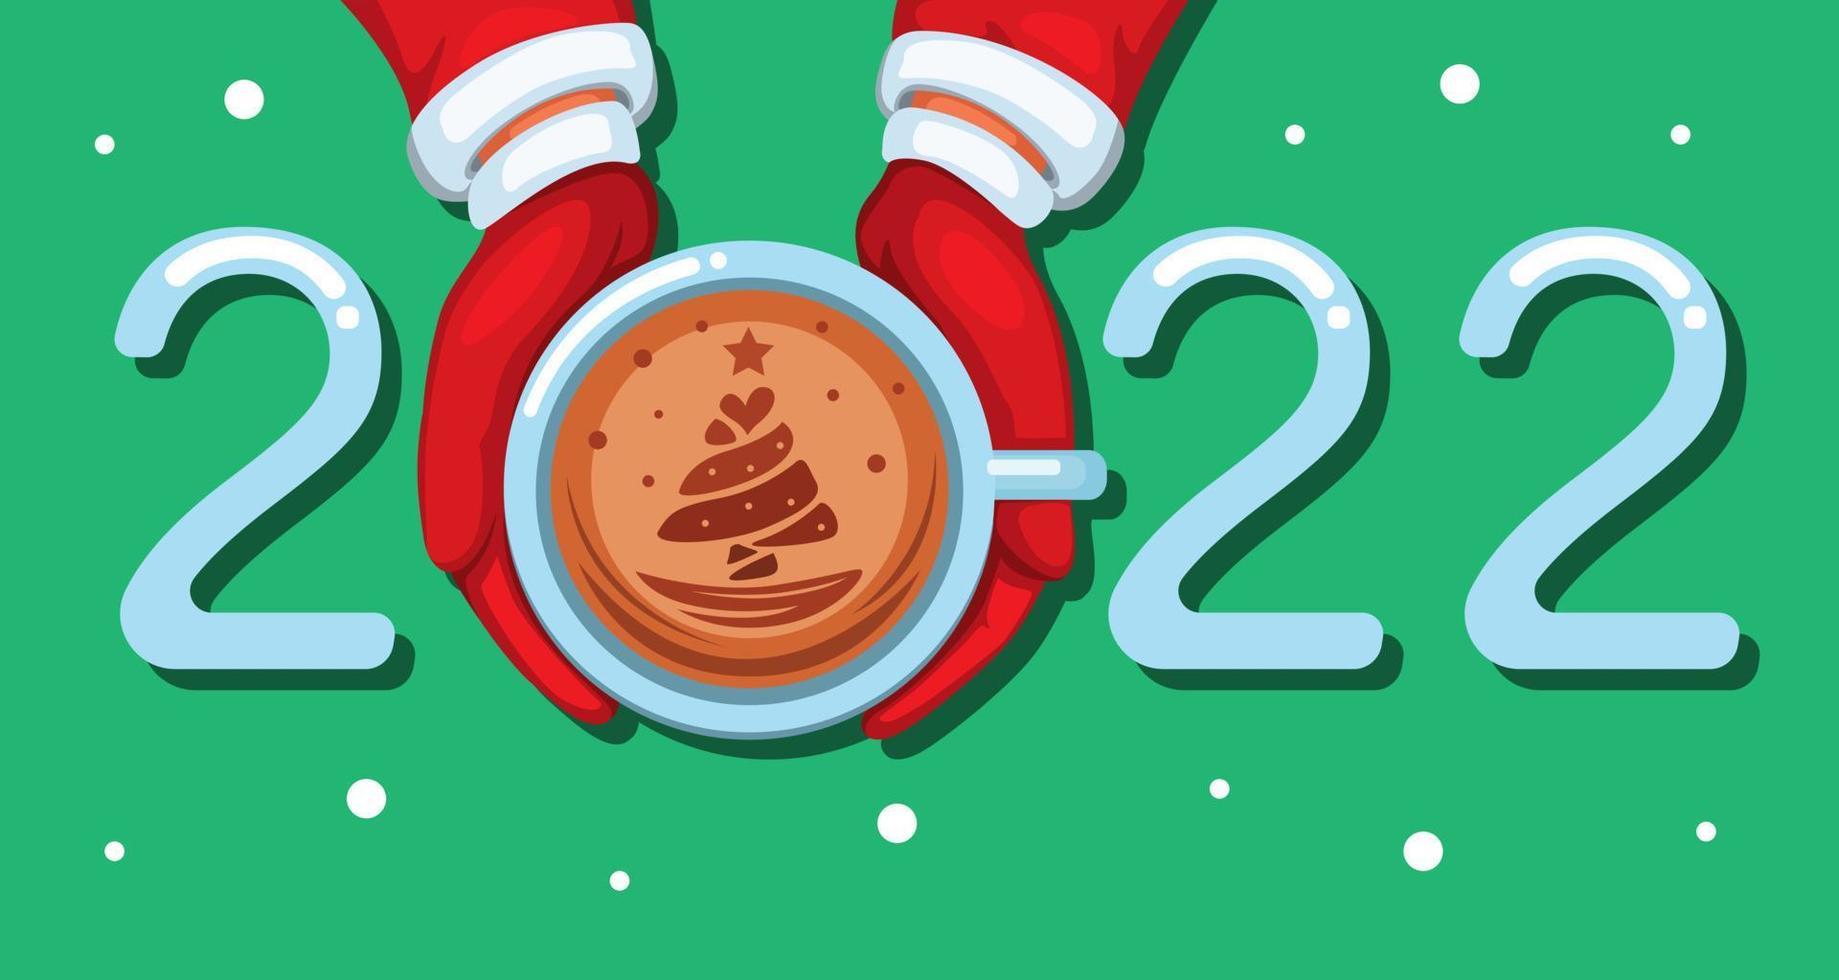 2022 kaffe sen konst jul- och nyårshälsning med trädsymbol tecknad illustration vektor